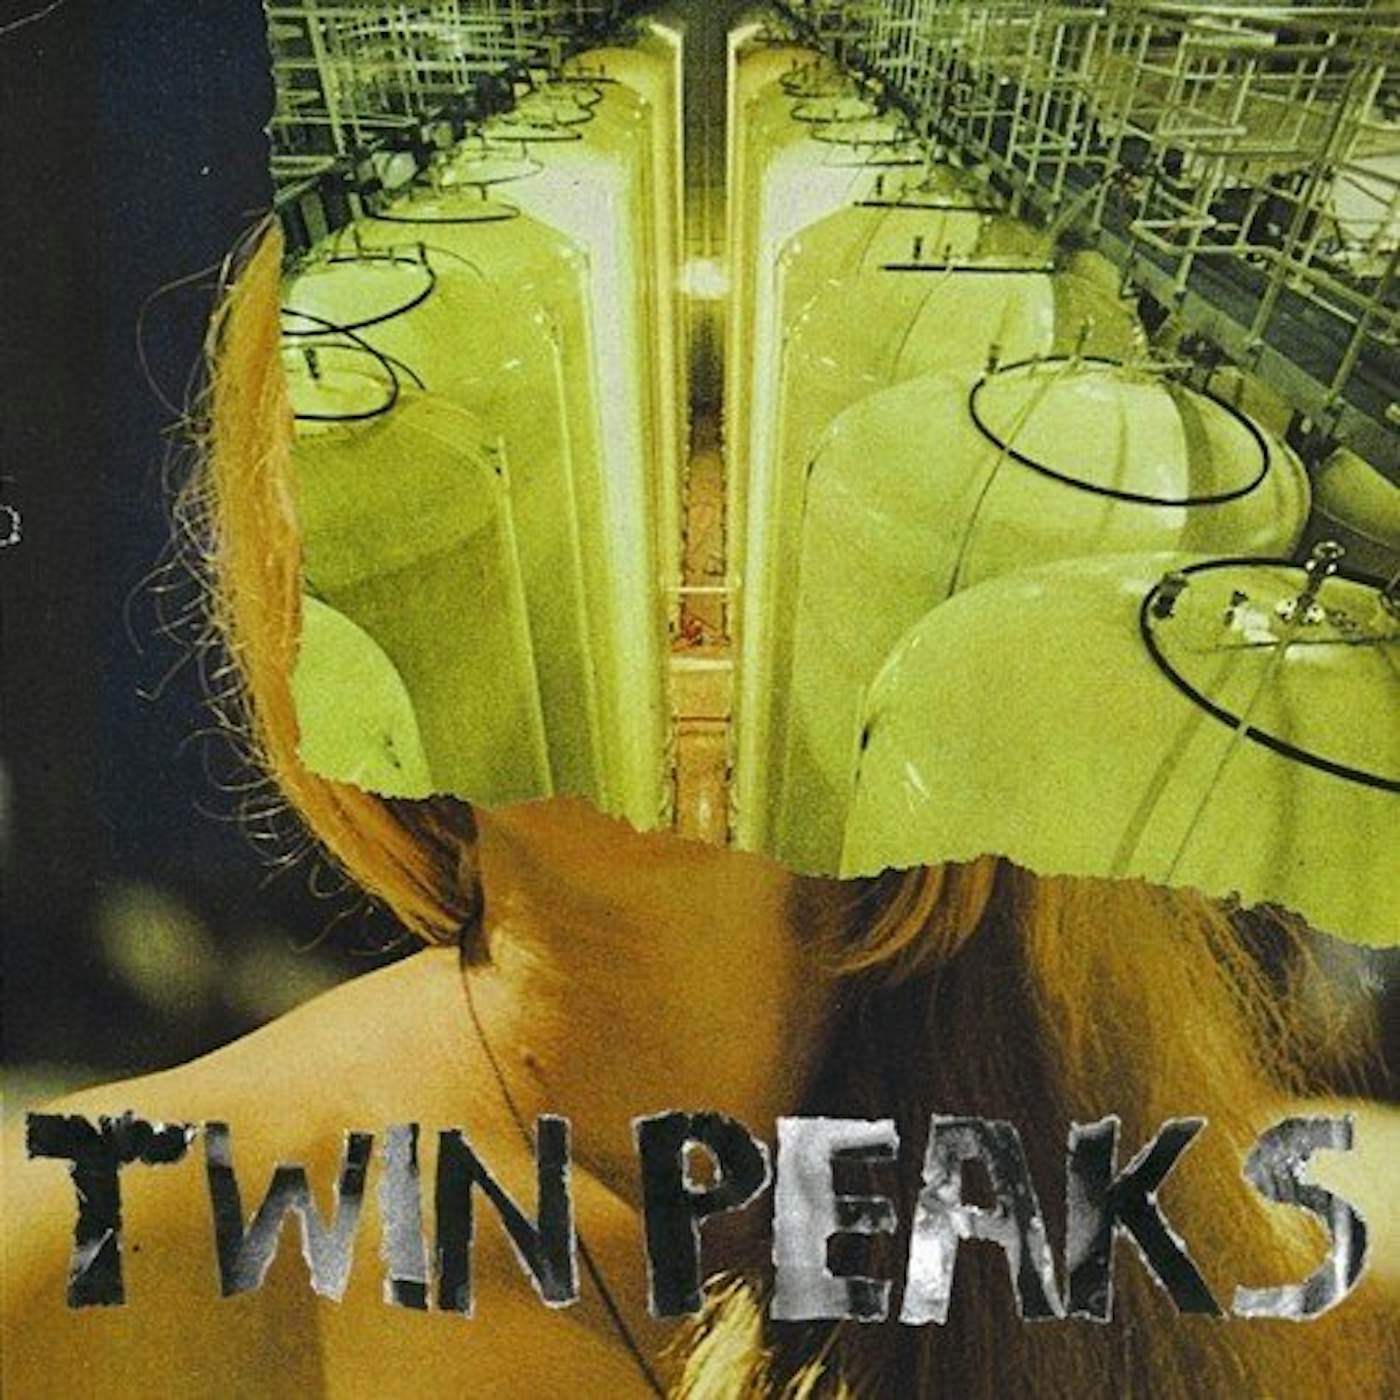 Twin Peaks SUNKEN CD